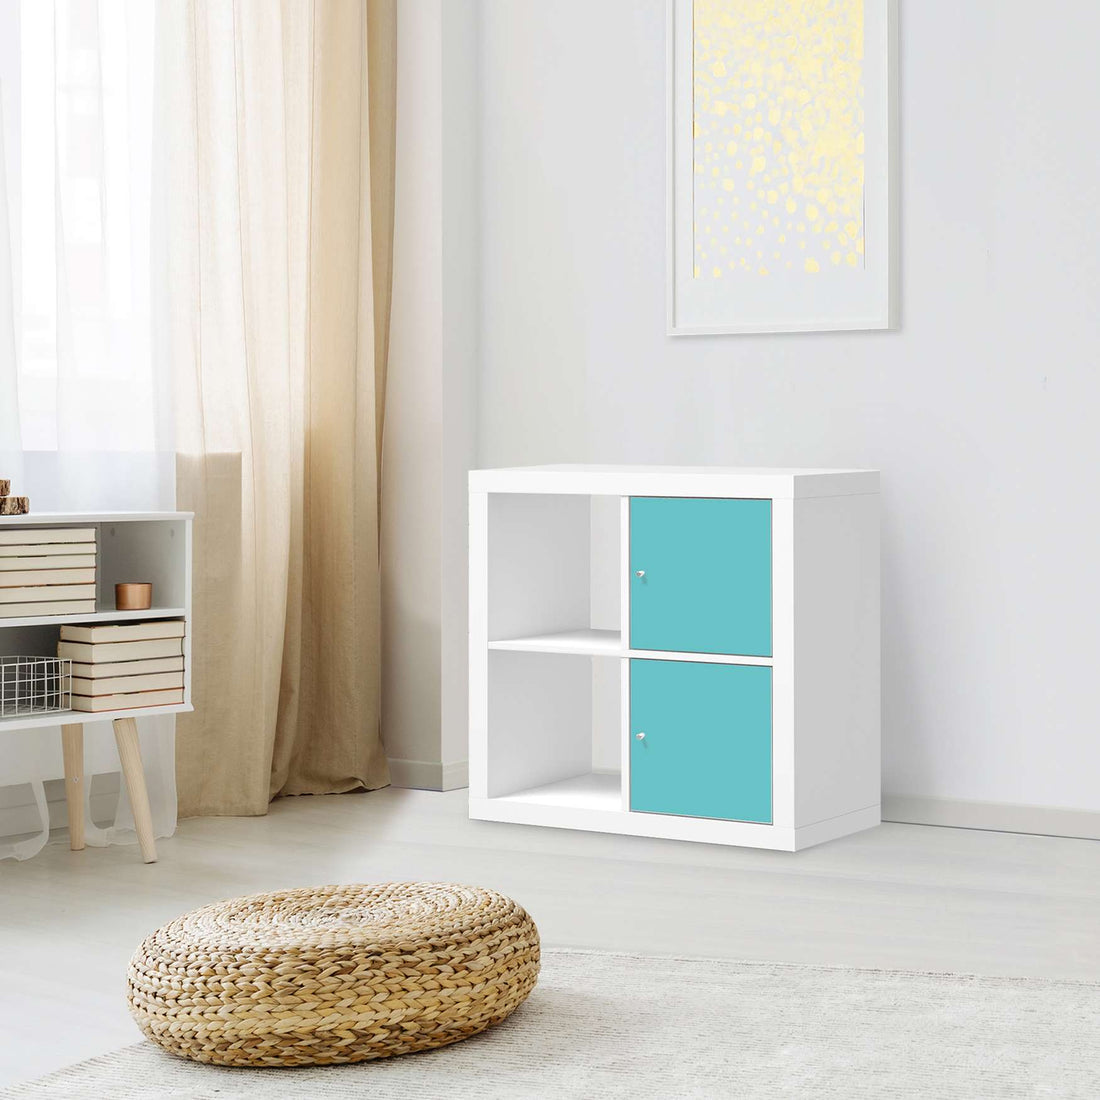 Klebefolie für Möbel Türkisgrün Light - IKEA Expedit Regal 2 Türen Hoch - Wohnzimmer